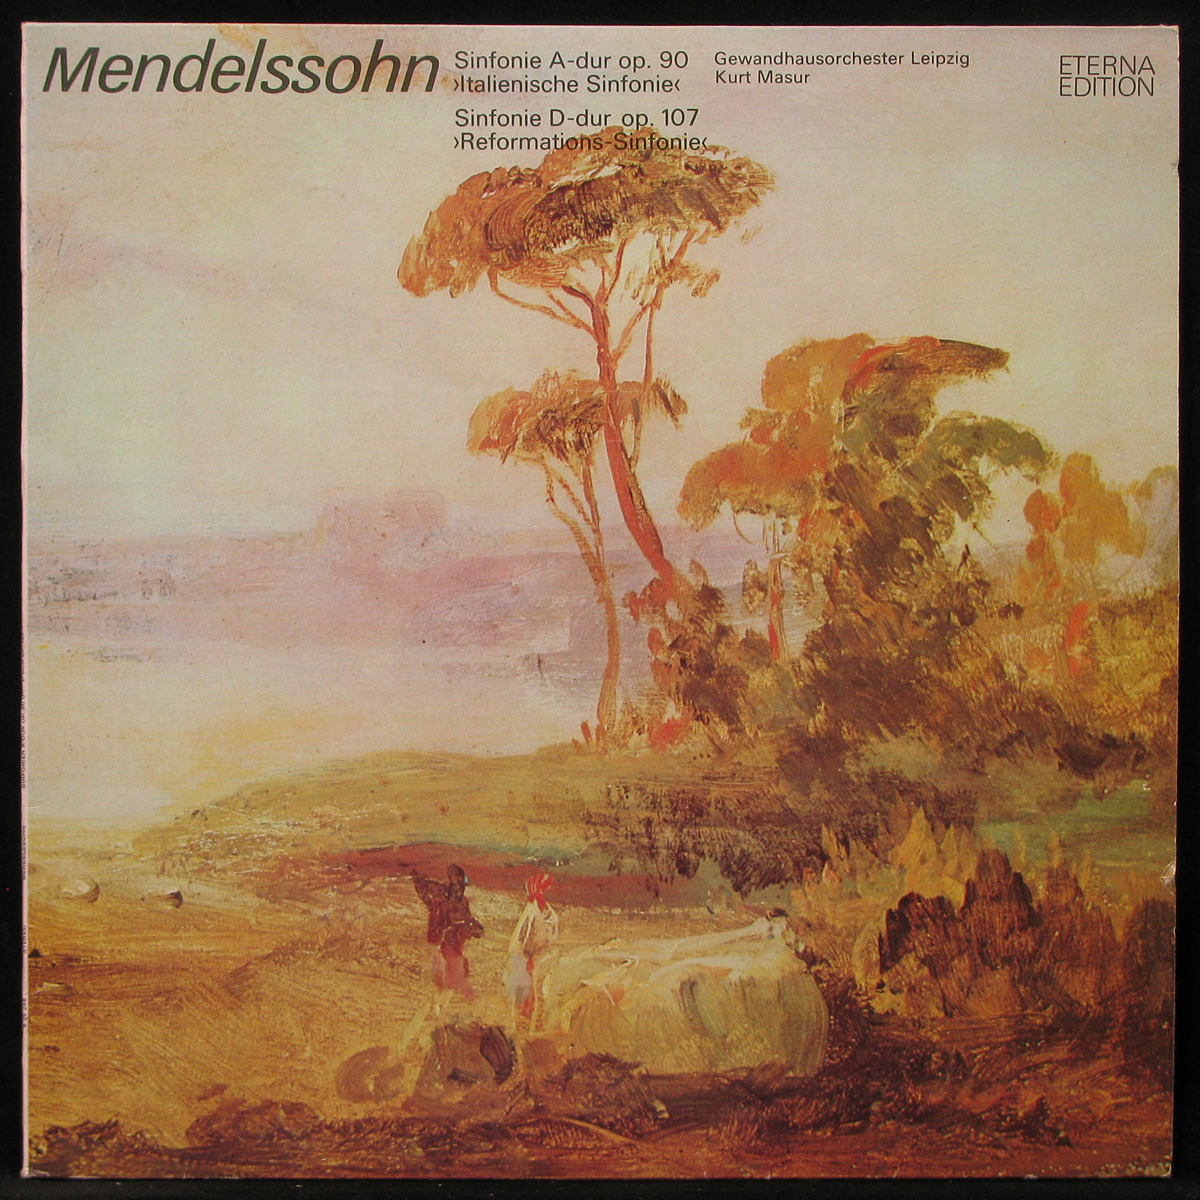 LP Kurt Masur — Mendelssohn: Sinfonie A-dur Op. 90, Sinfonie D-dur Op. 107 фото